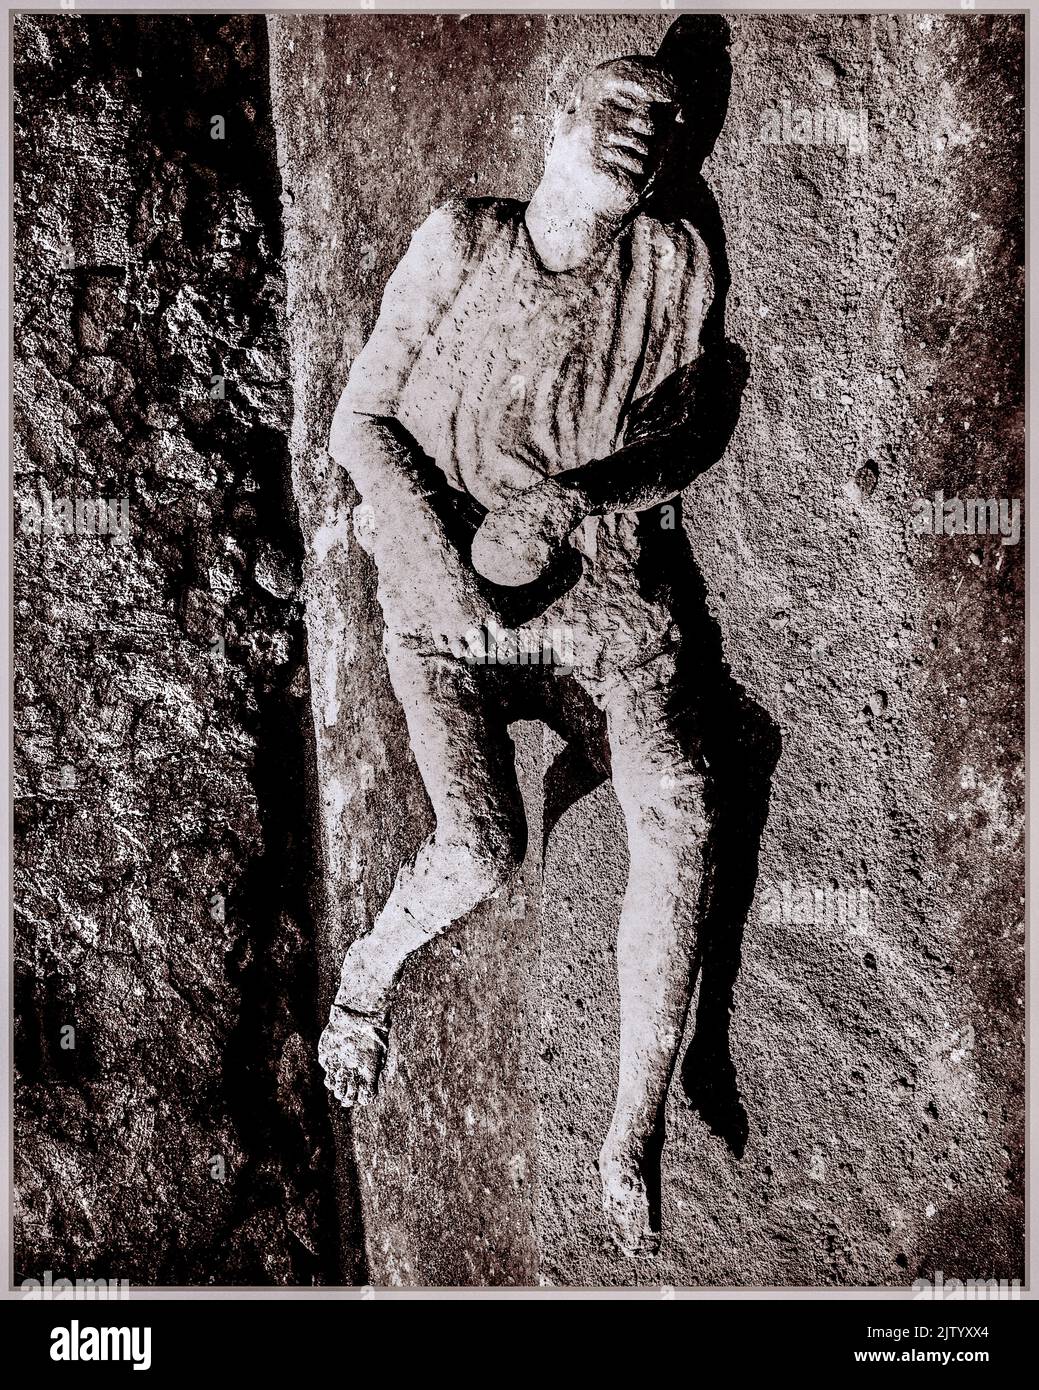 POMPEII VESUVIUS BODY Petrified body in ash, victim of the eruption of Mt Vesuvius in Pompeii, Italy 'Giorgio Sommer, Impronte umane (Pompeii), 1873, albumen print. Stock Photo